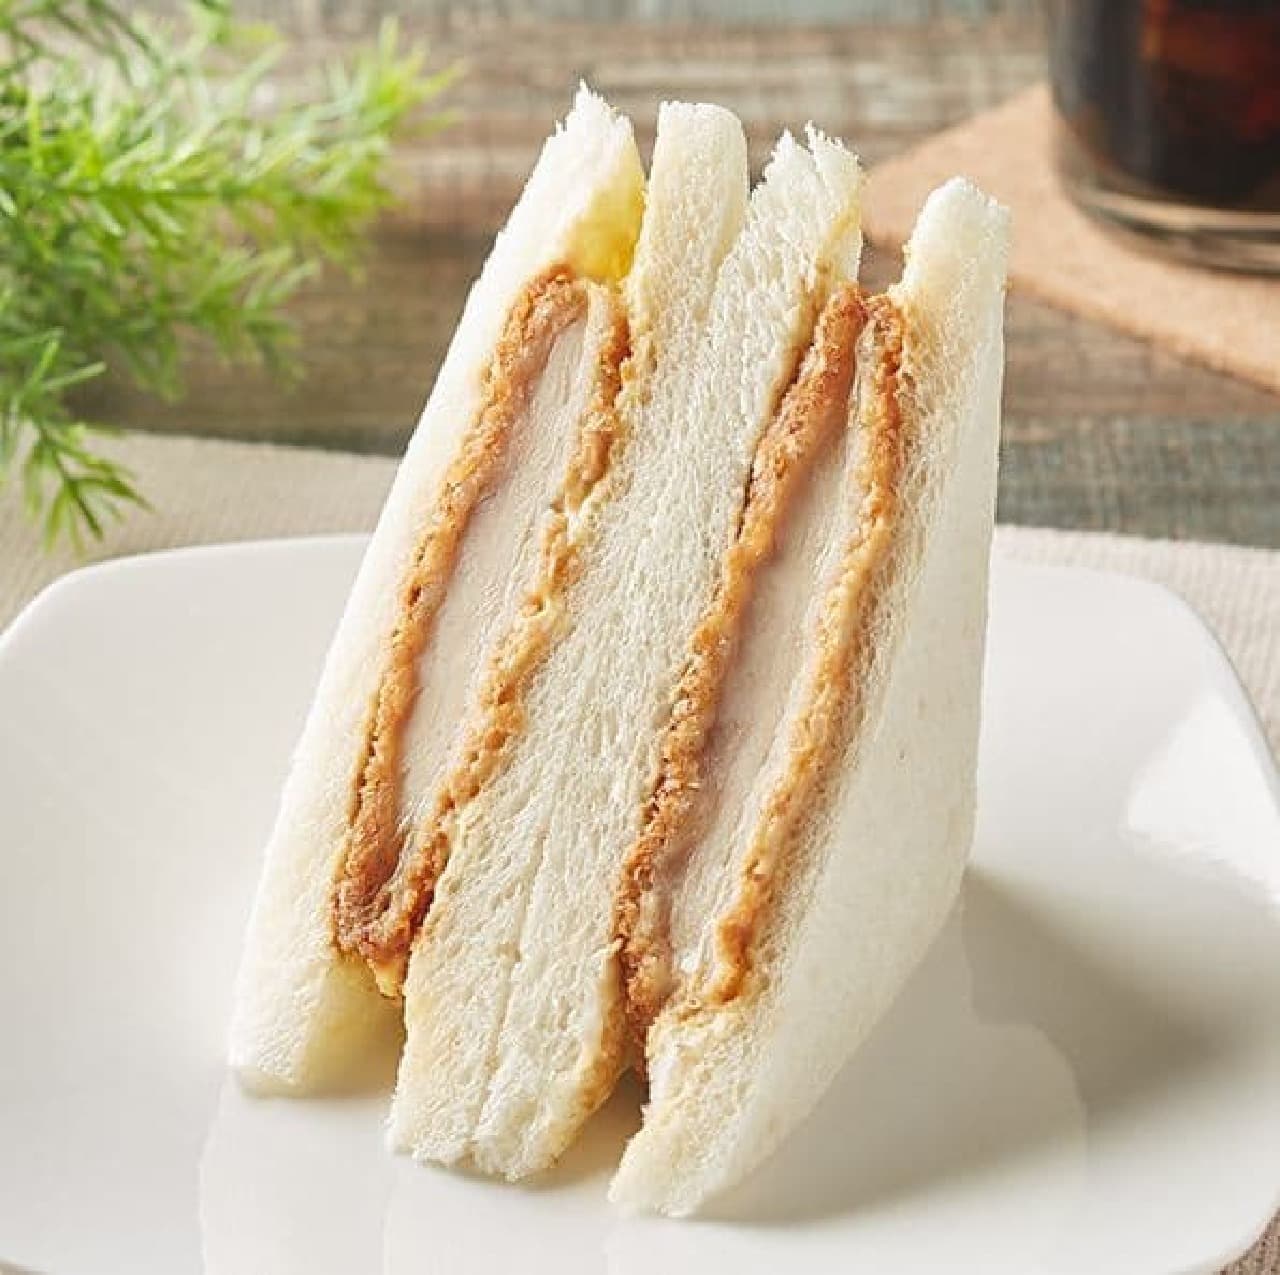 FamilyMart "Chicken Katsu Sandwich"